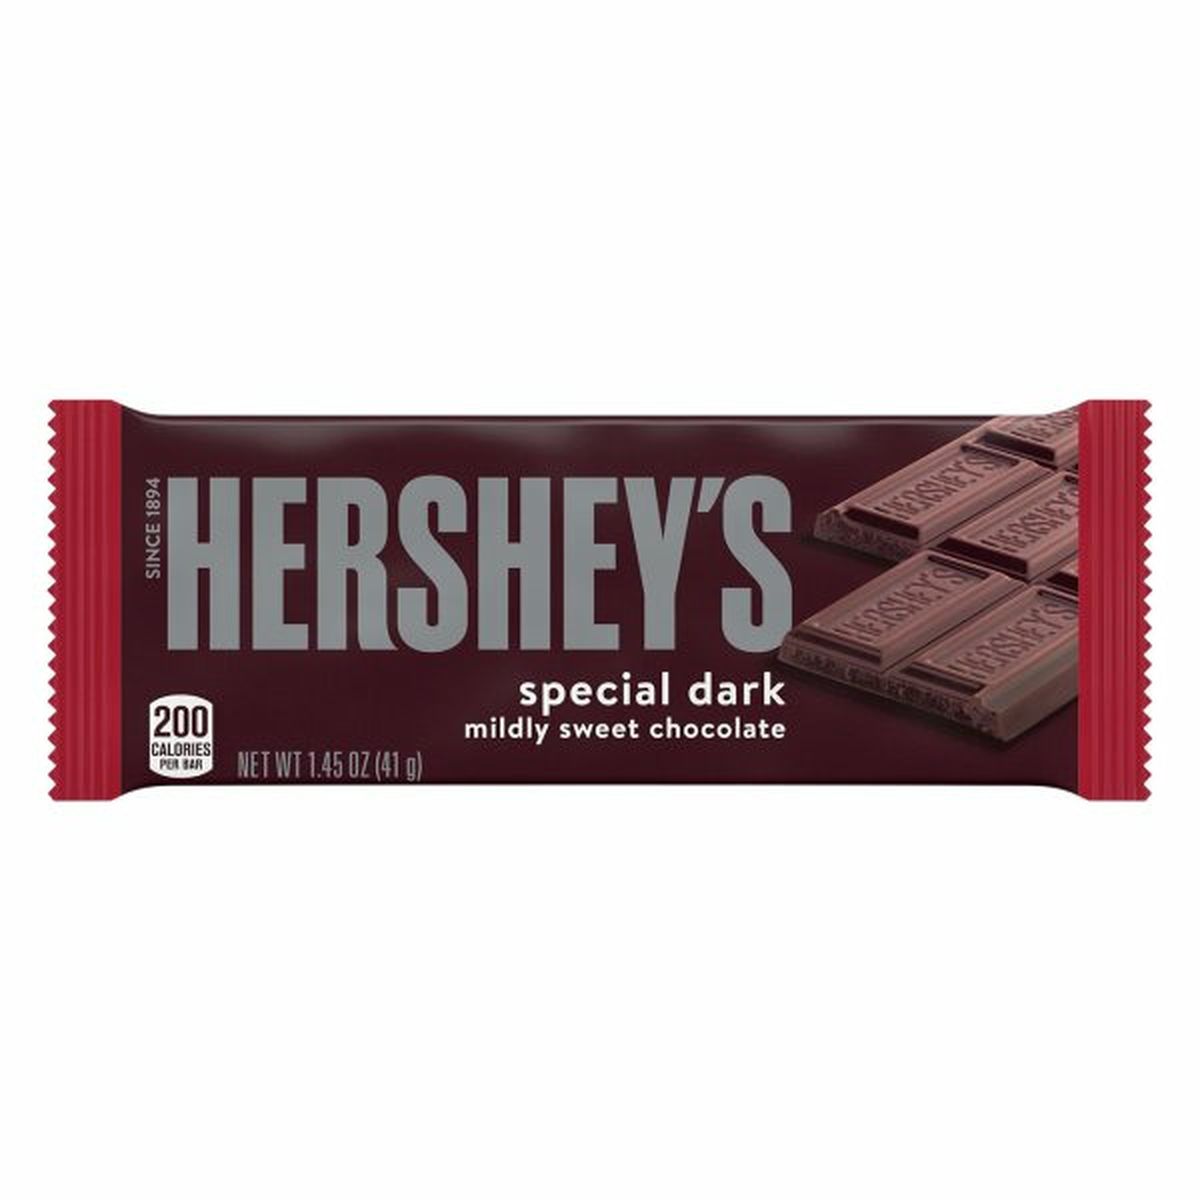 Calories in Hershey's Chocolate, Mildly Sweet, Special Dark